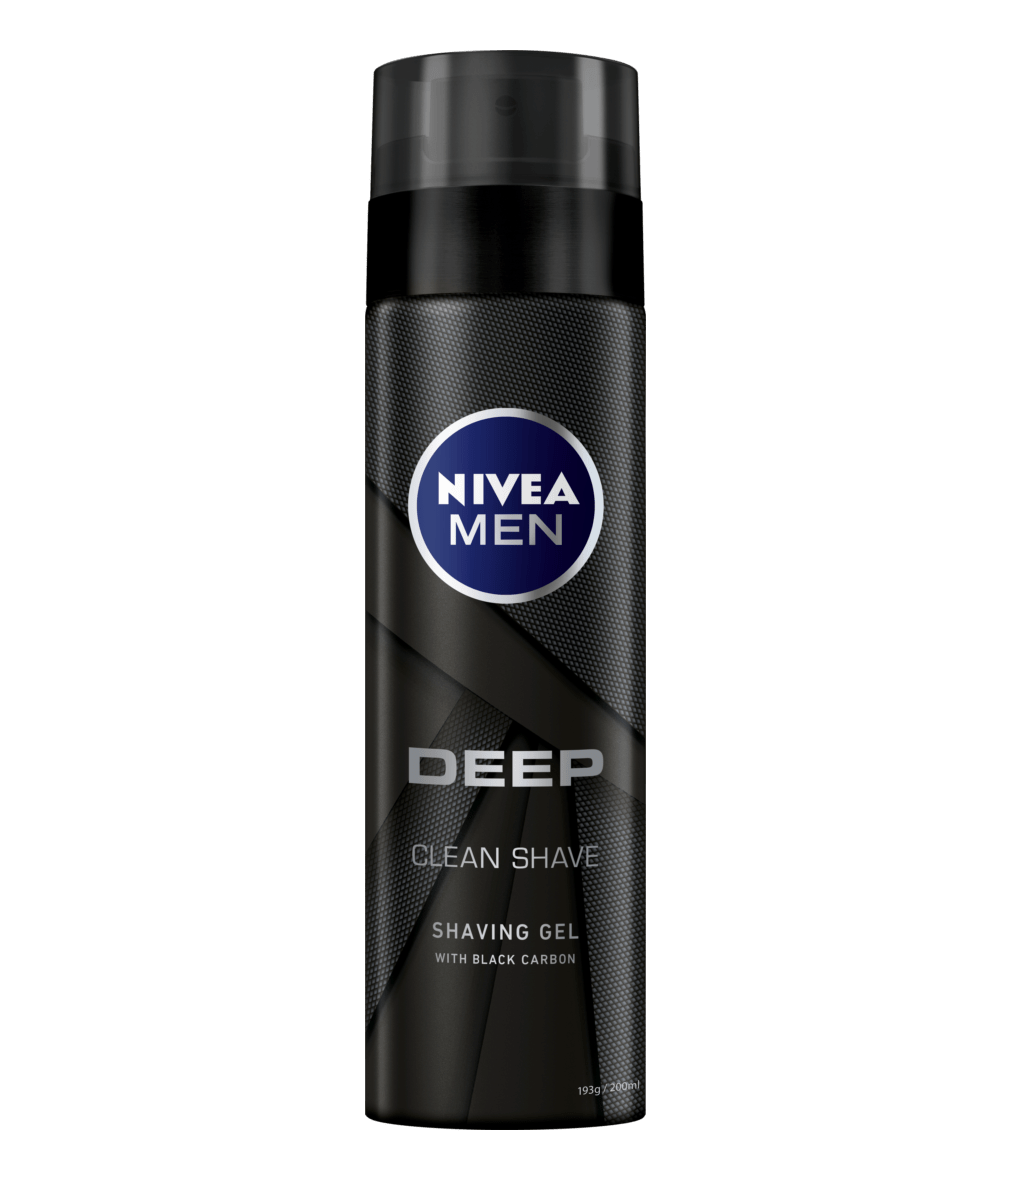 200ml Deep Shaving Gel – NIVEA MEN